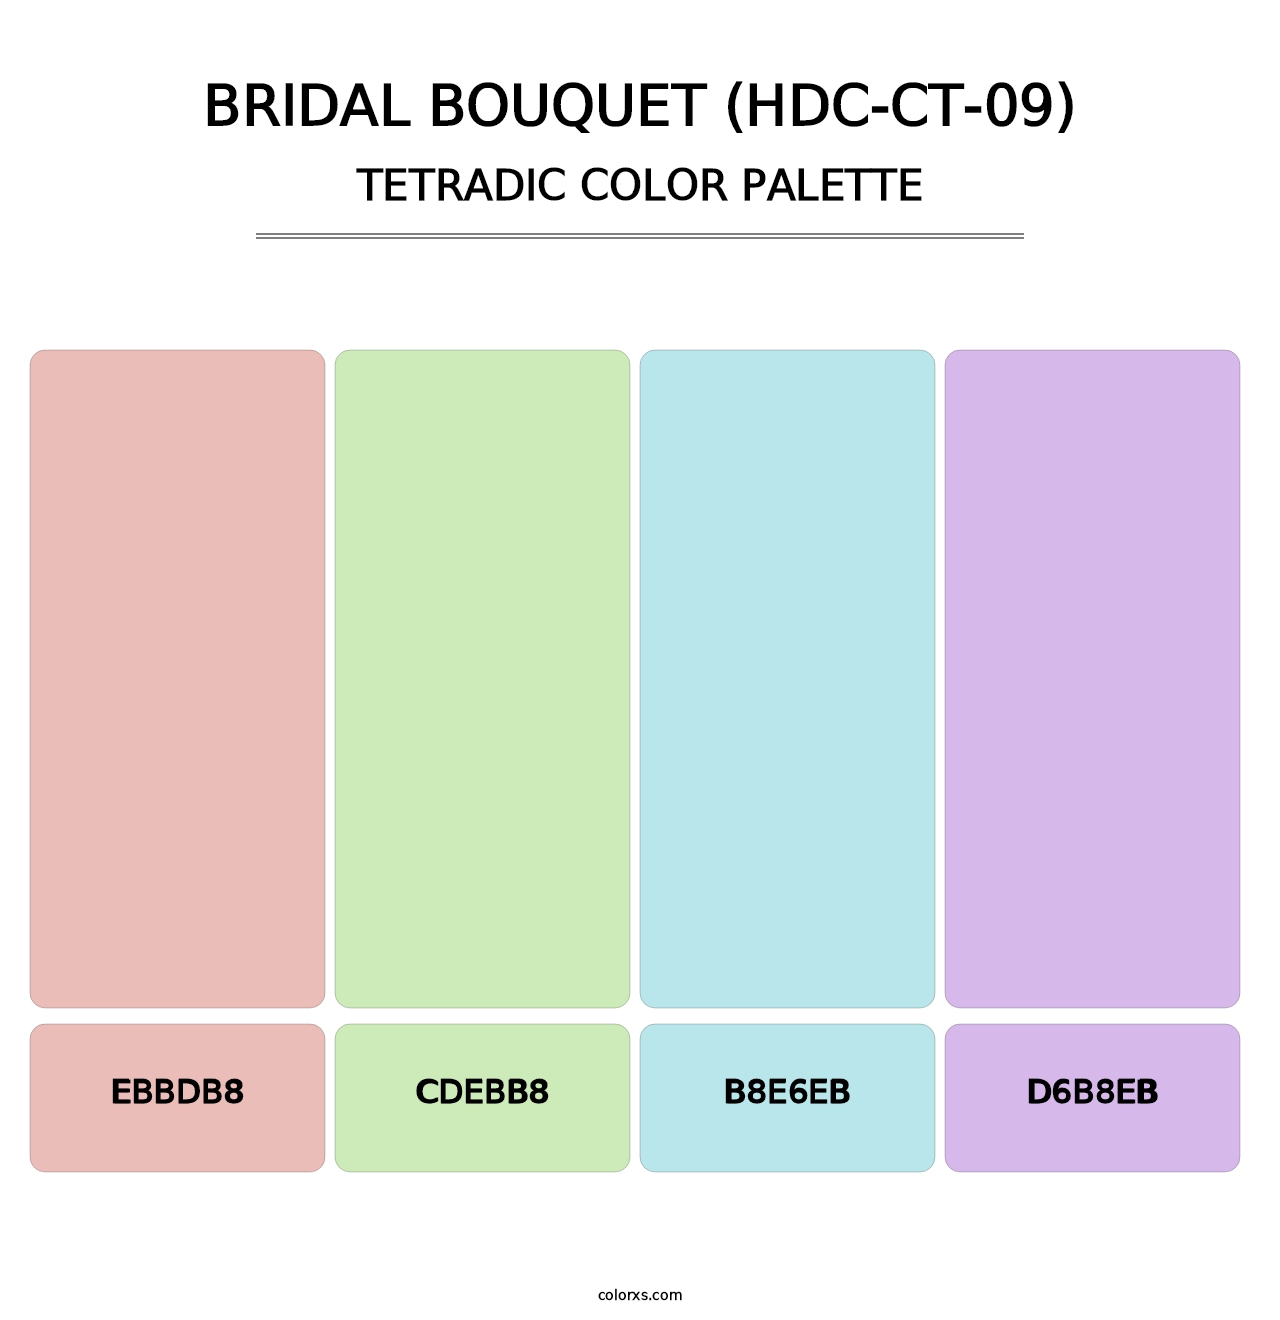 Bridal Bouquet (HDC-CT-09) - Tetradic Color Palette